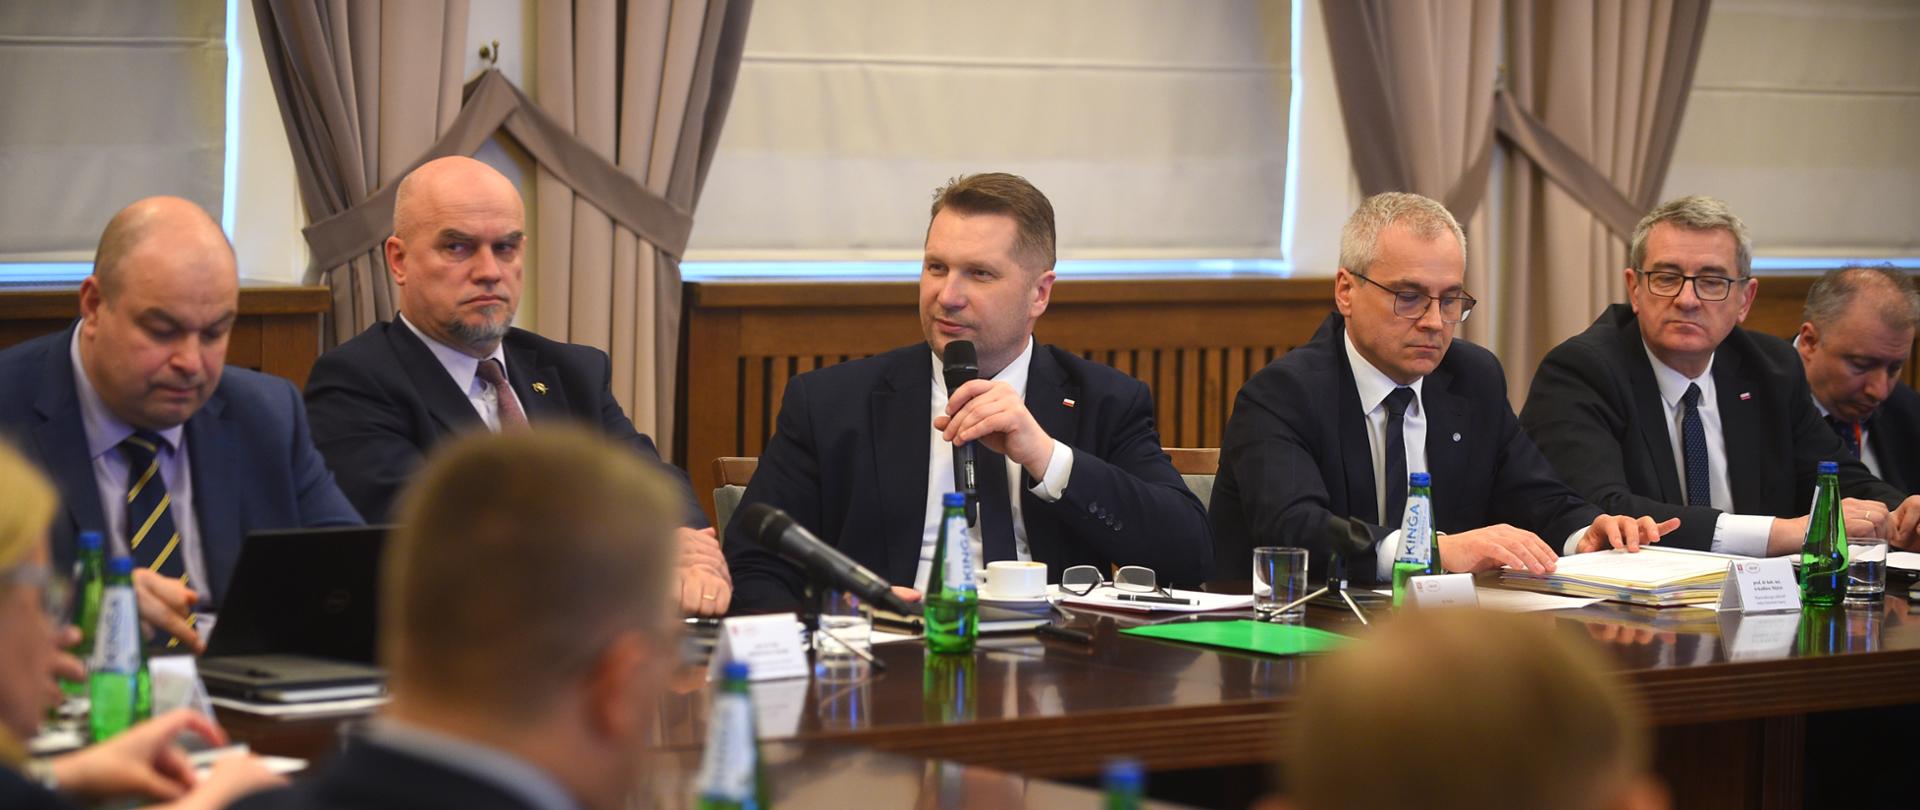 Spotkanie KRASP wraz z udziałem ministra Czarnka. Minister przemawia do mikrofonu, z prawej i lewej stronie ministra widać innych członków spotkania